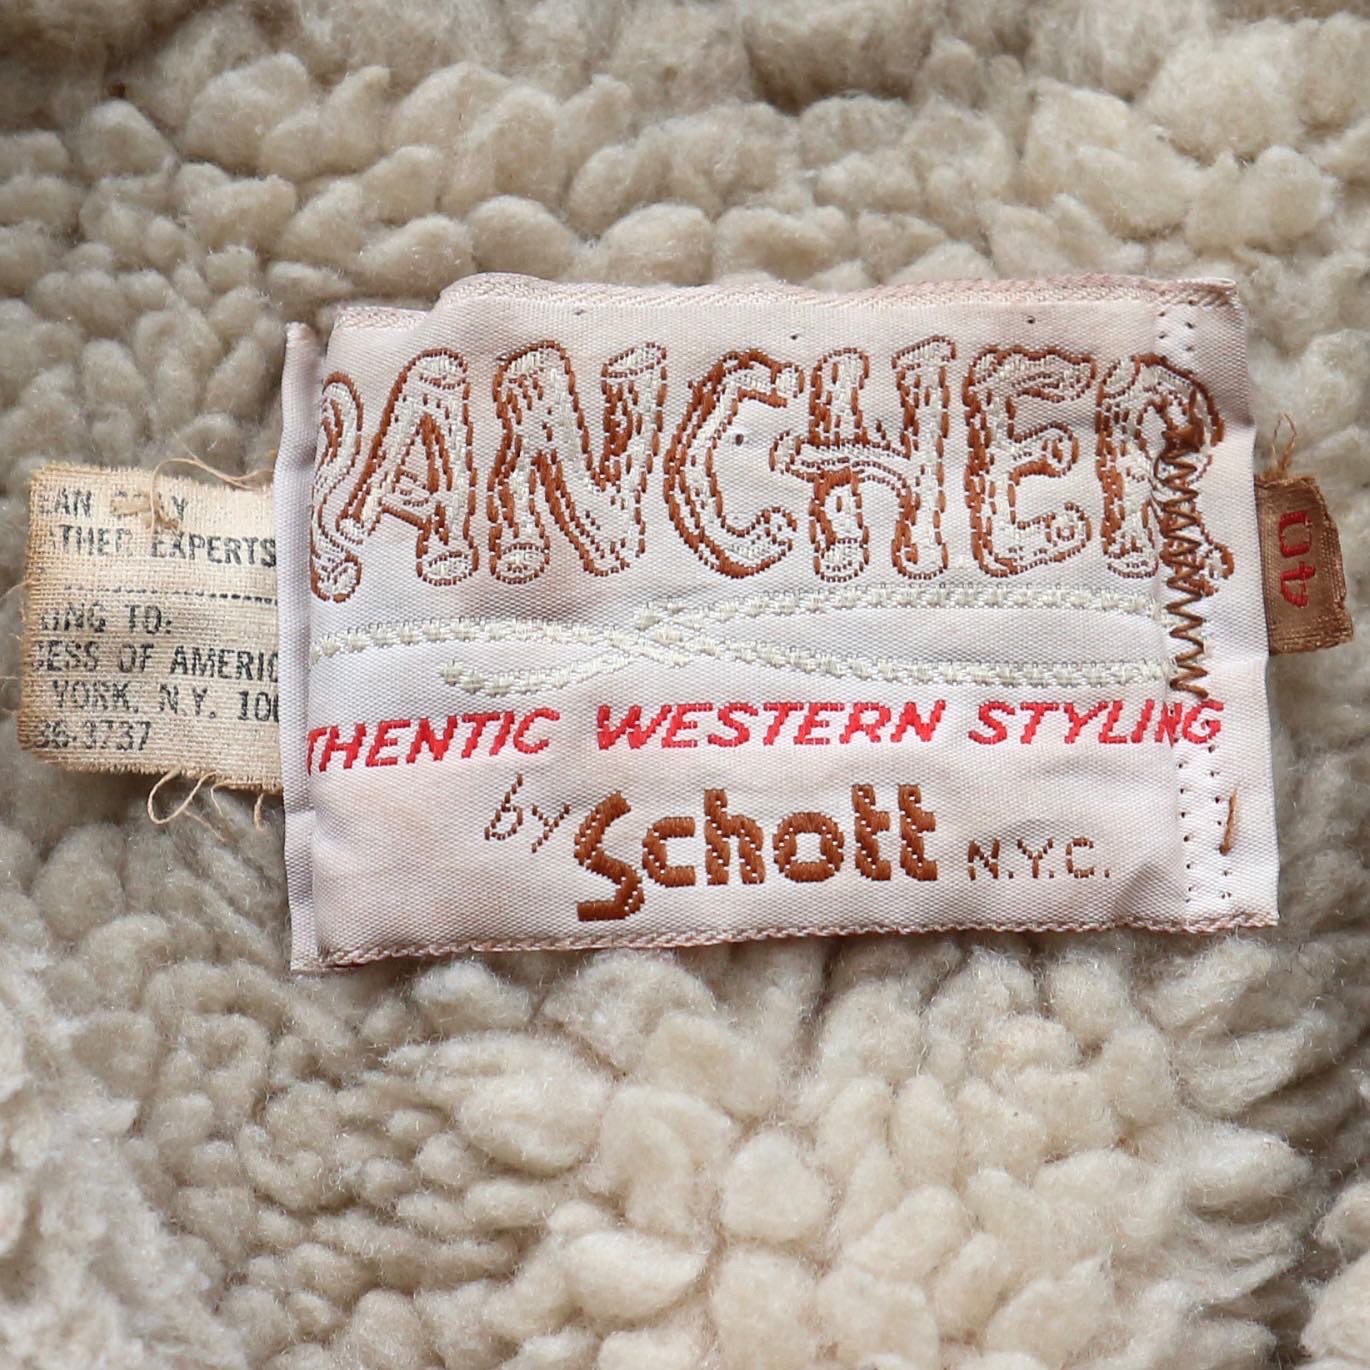 Schott Sherpa Lined Western Style Jacket Size L